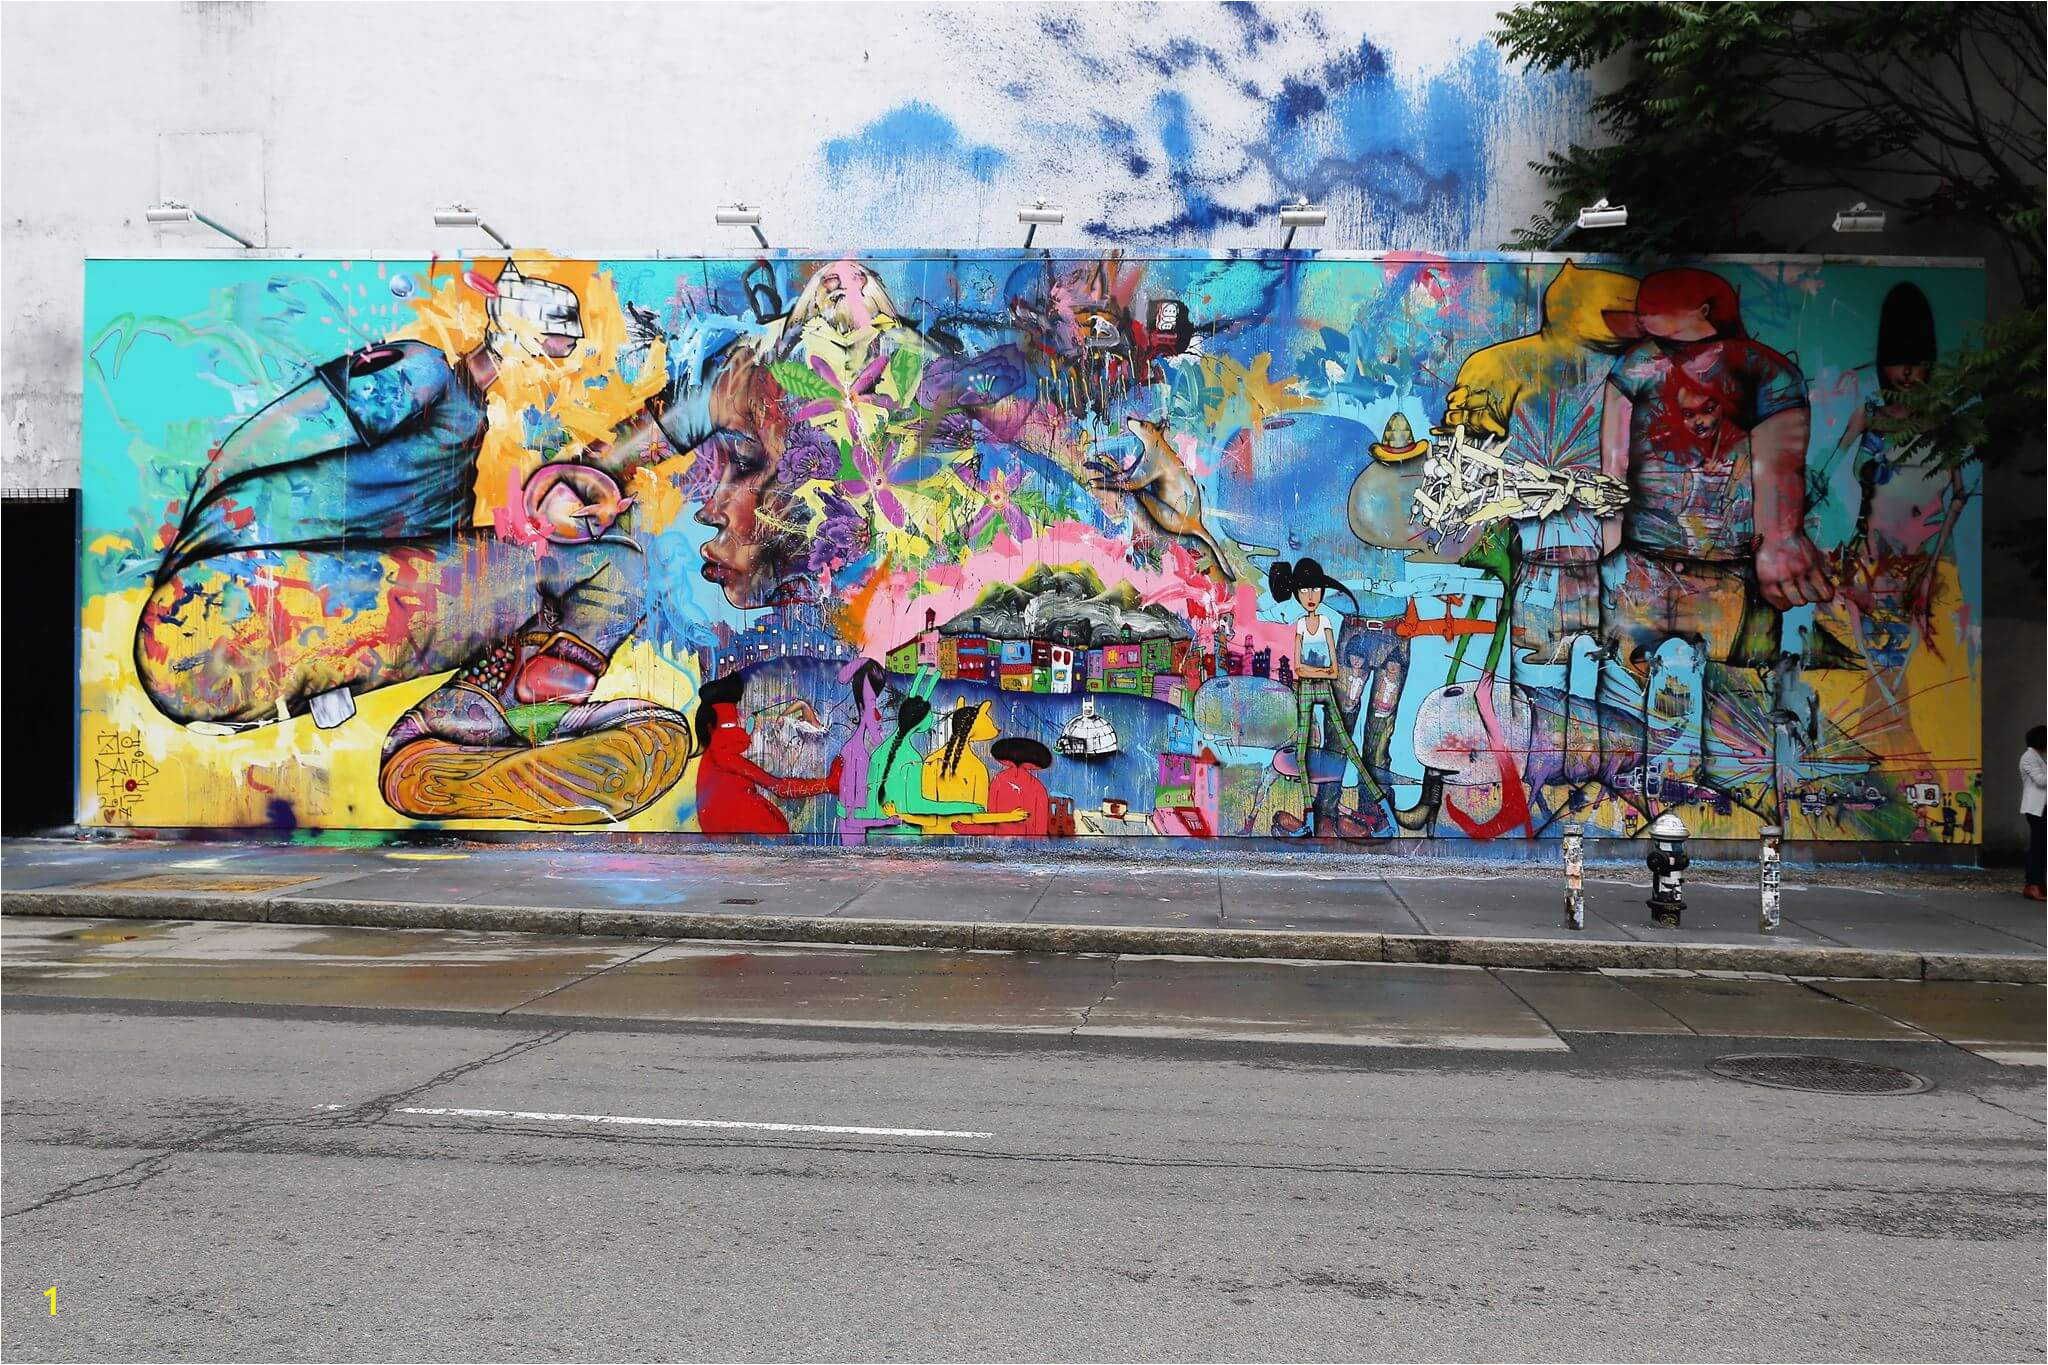 david choe graffiti street art bowery wall new york city photo credit just a spectator ben lau 19